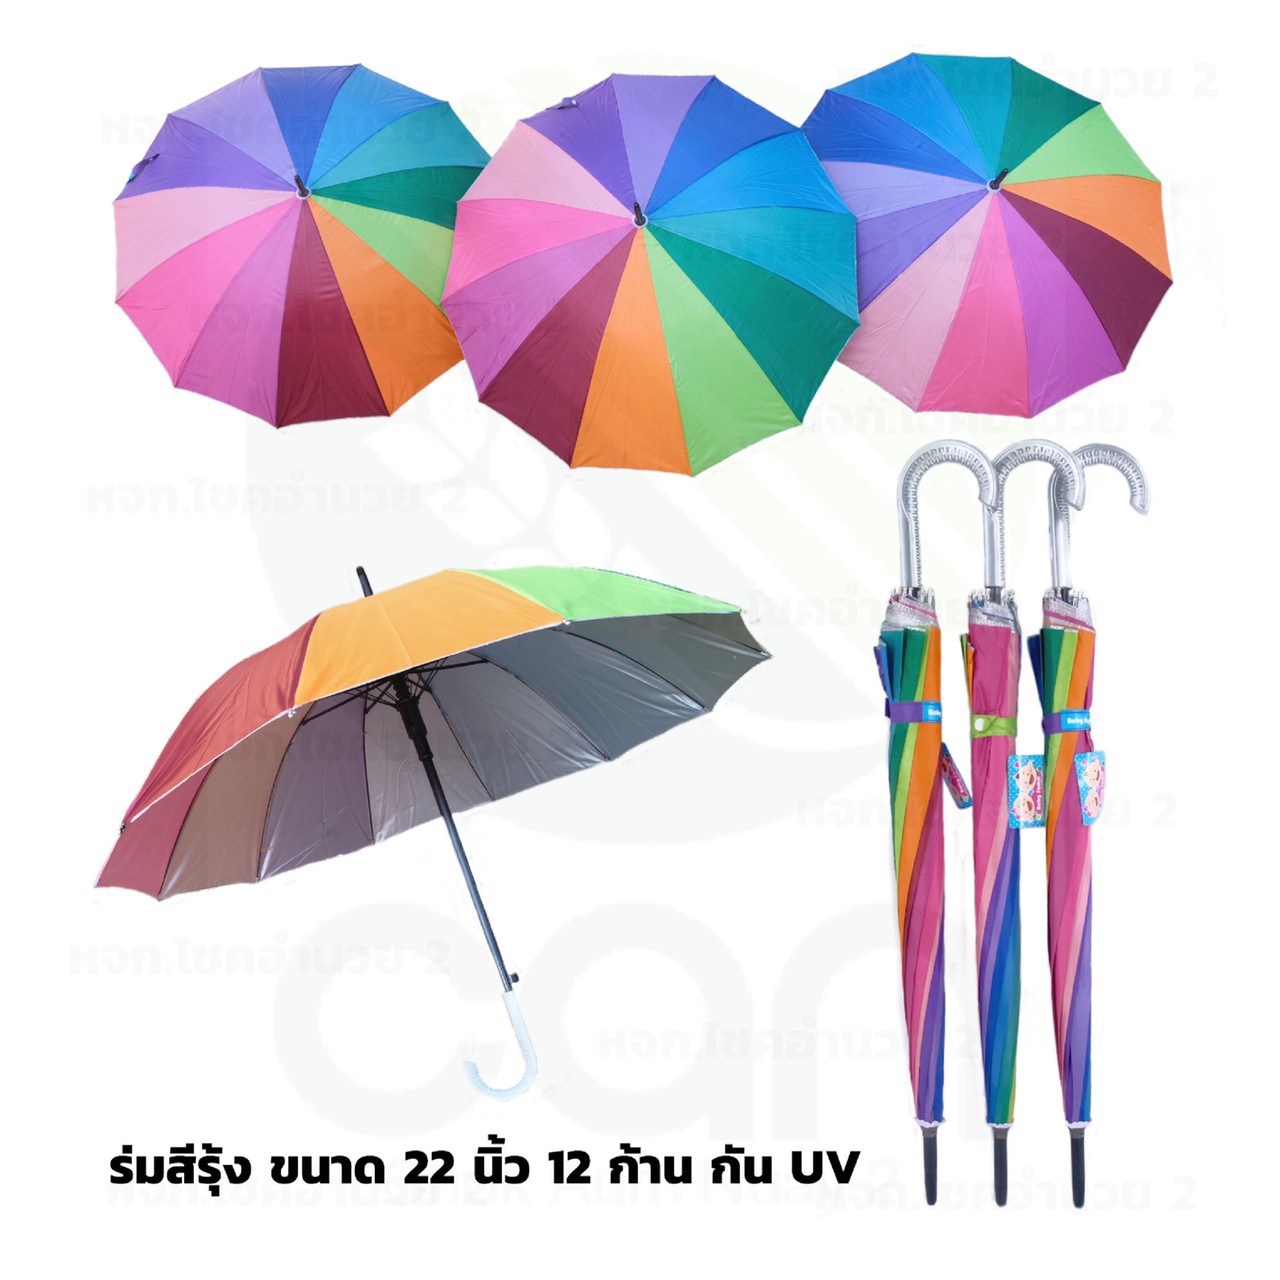 ร่มสีรุ้ง 22 นิ้ว 12 ก้าน กันยูวี  แข็งแรง ร่มเรนโบว์ ร่มถือ ร่มพกพา ร่มกันแดด ร่มกันUV umbrella rainbow